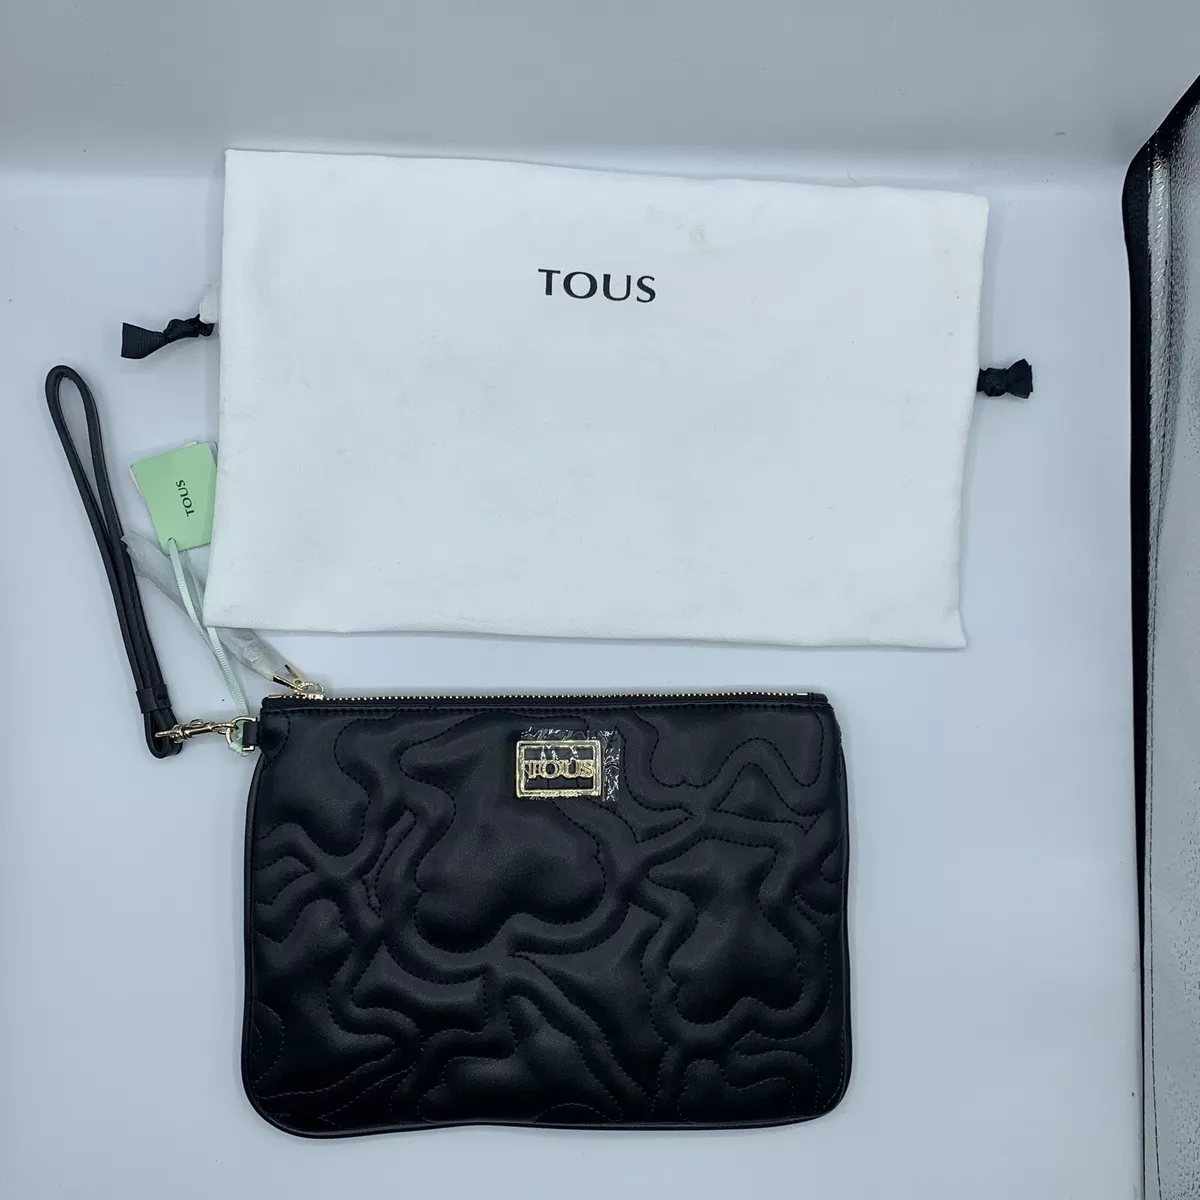 NEW Tous Black Kaos Dream clutch bag | eBay